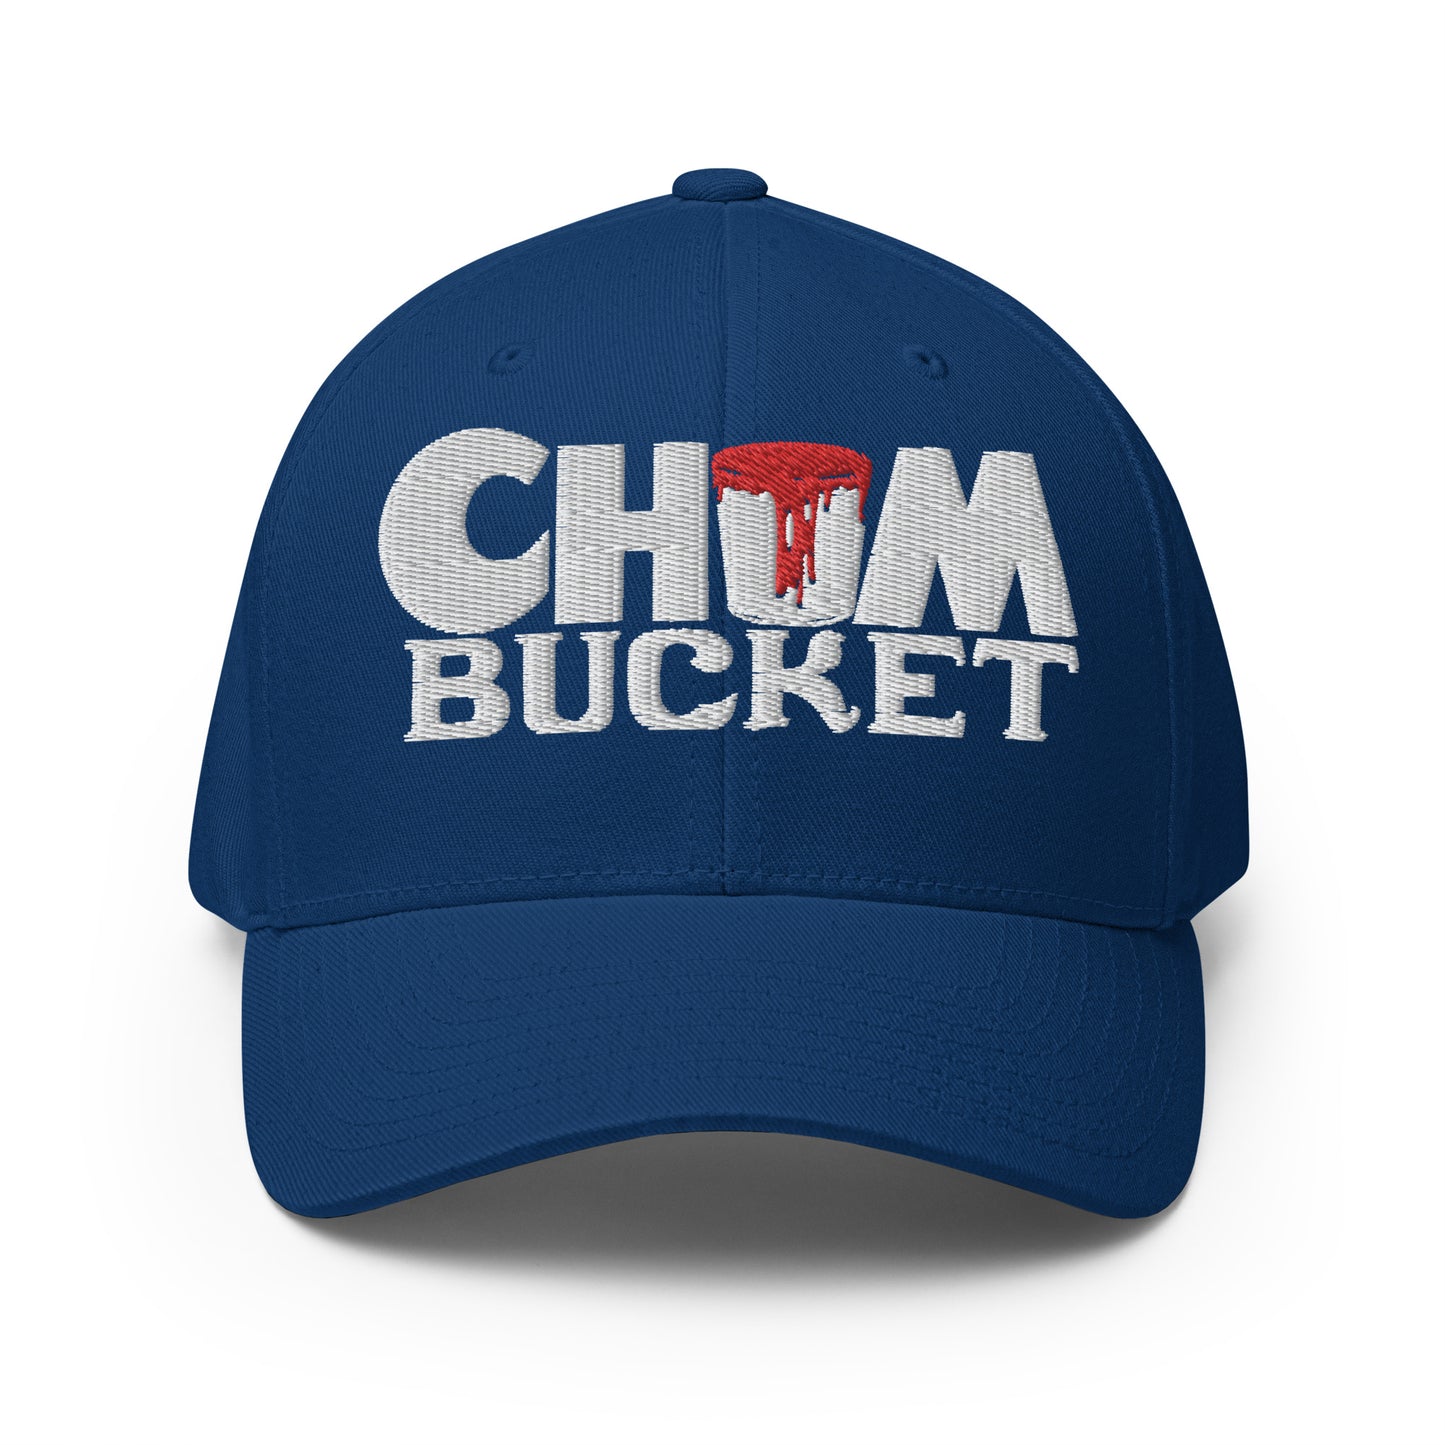 Chum Bucket Flexfit Baseball Cap